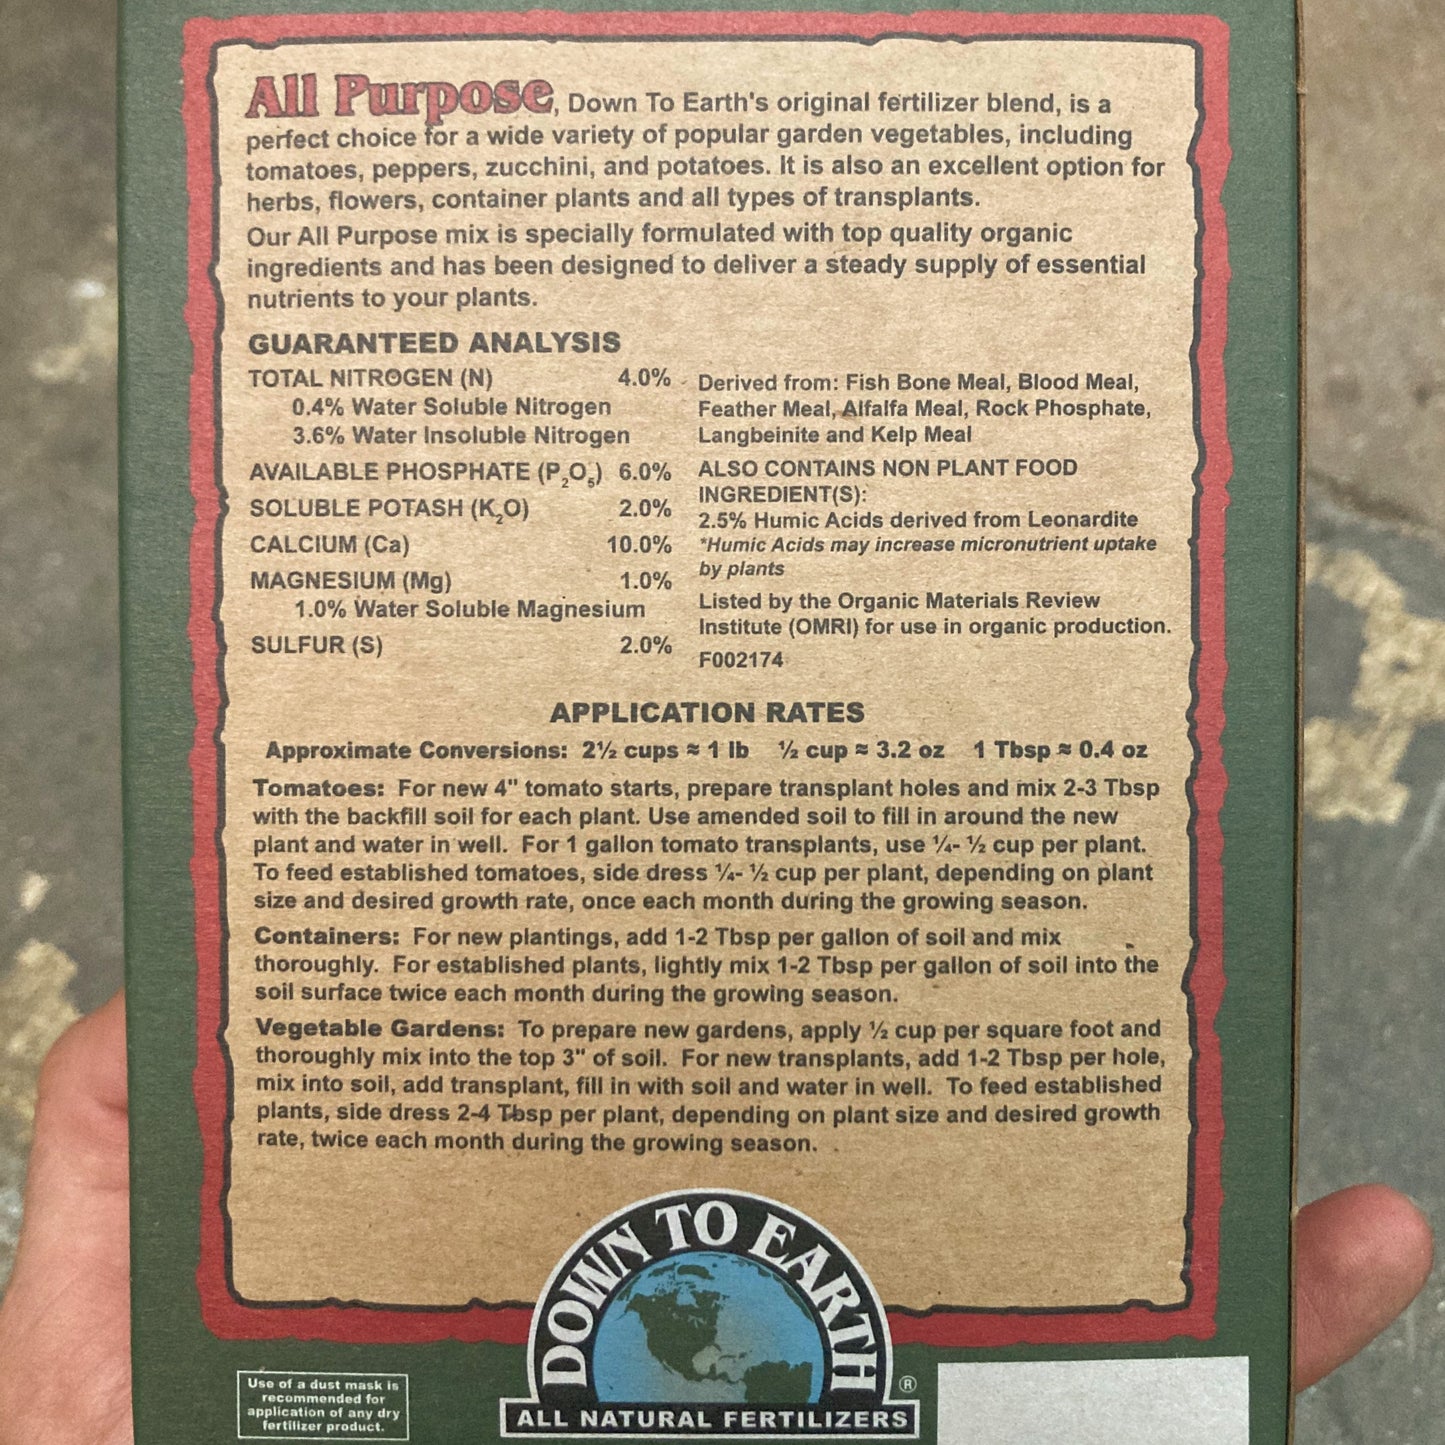 All Purpose Fertilizer - Down to Earth - 1 Lb Box